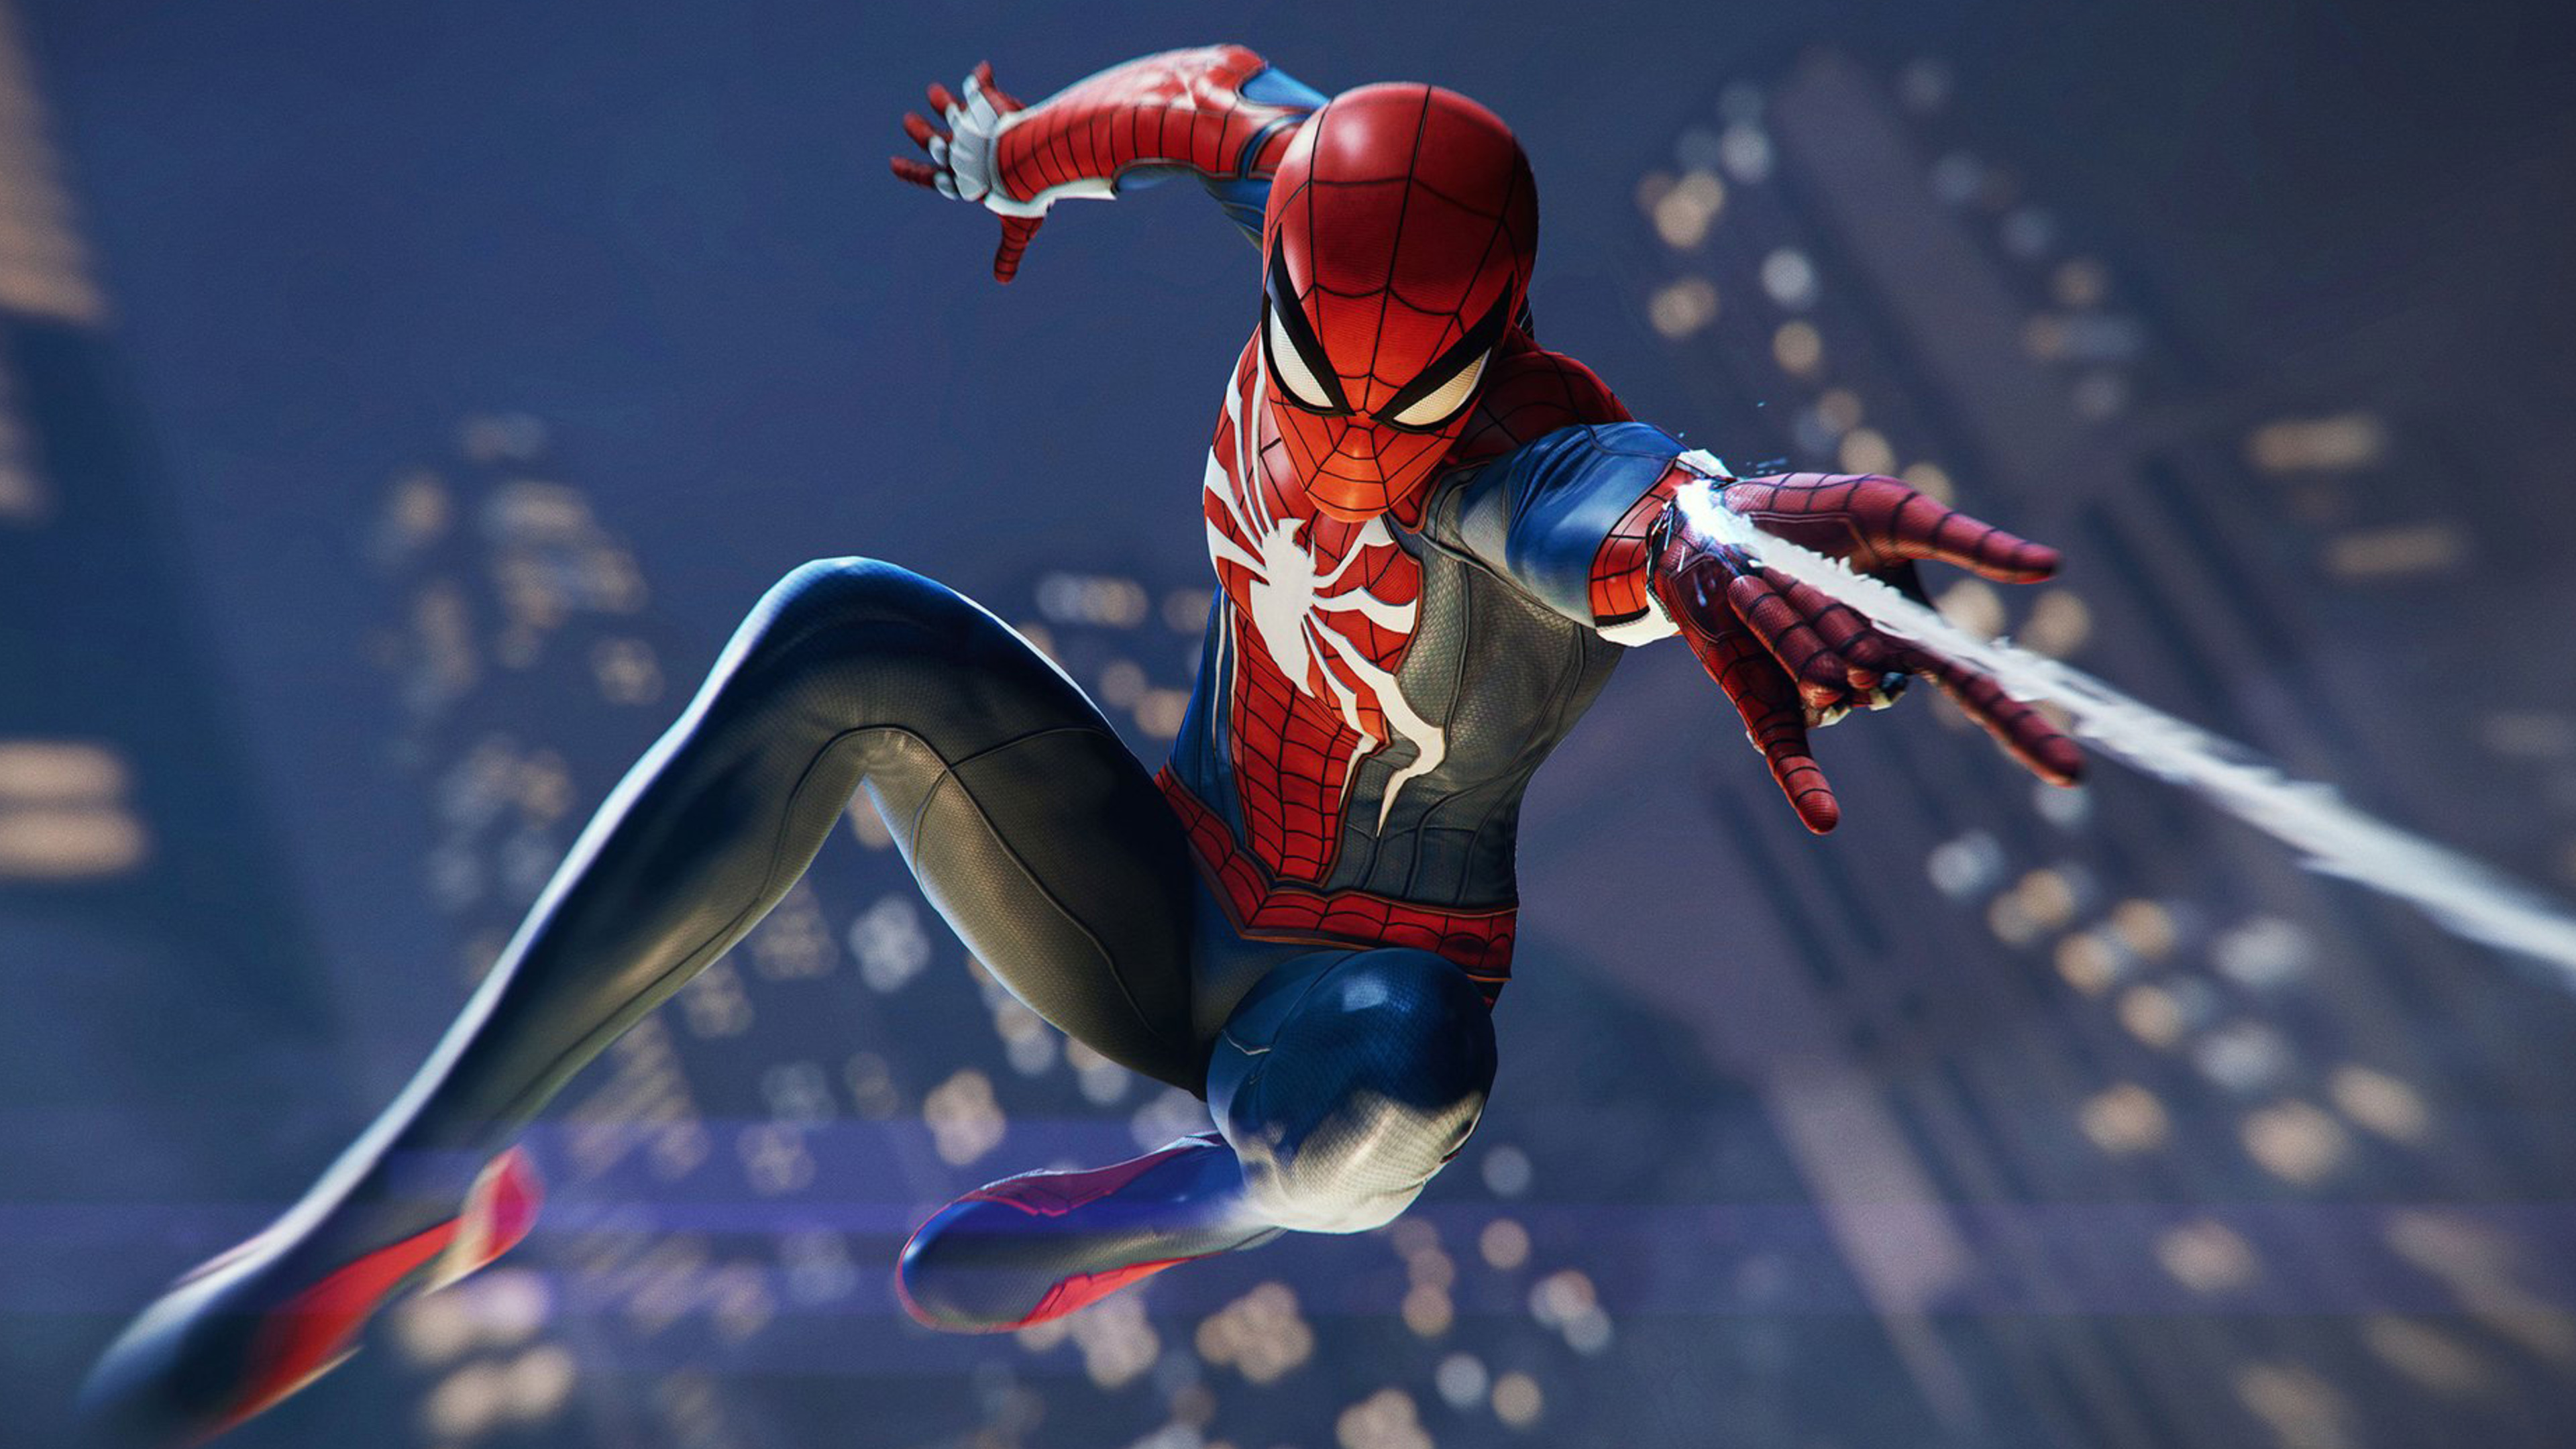 Spider-man, Insomniac Games, Superhéroe, Figura de Acción, Playstation 4. Wallpaper in 3840x2160 Resolution